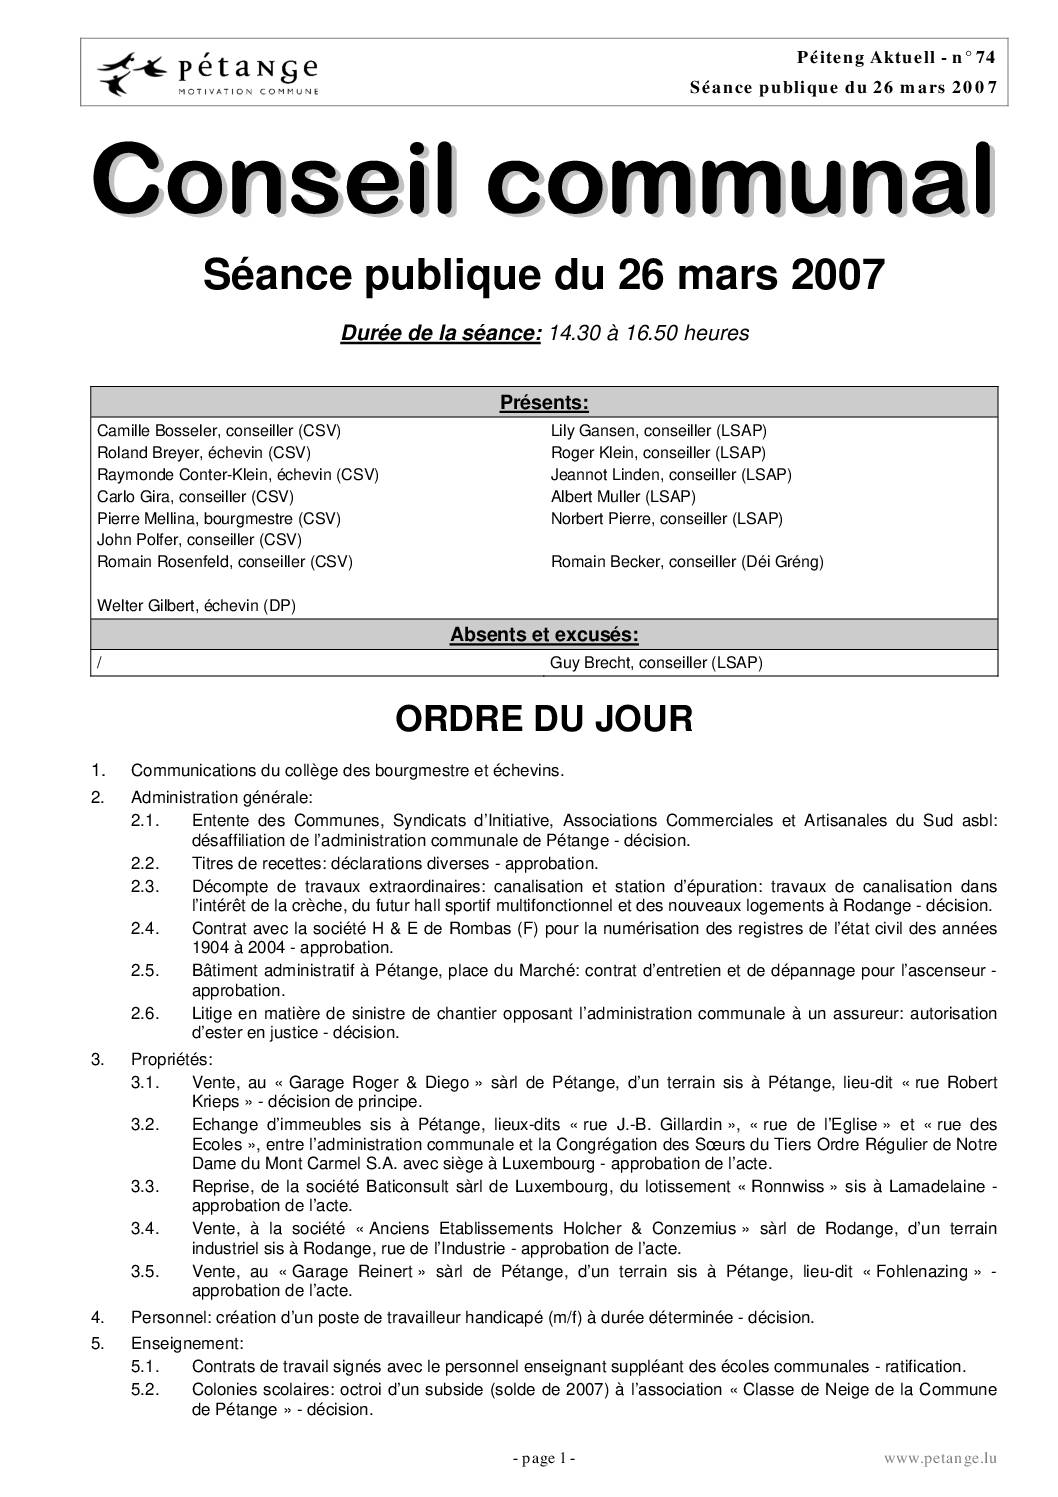 Rapport des séances du conseil communal du 26.03.2007, 30.04.2007 et 21.05.2007